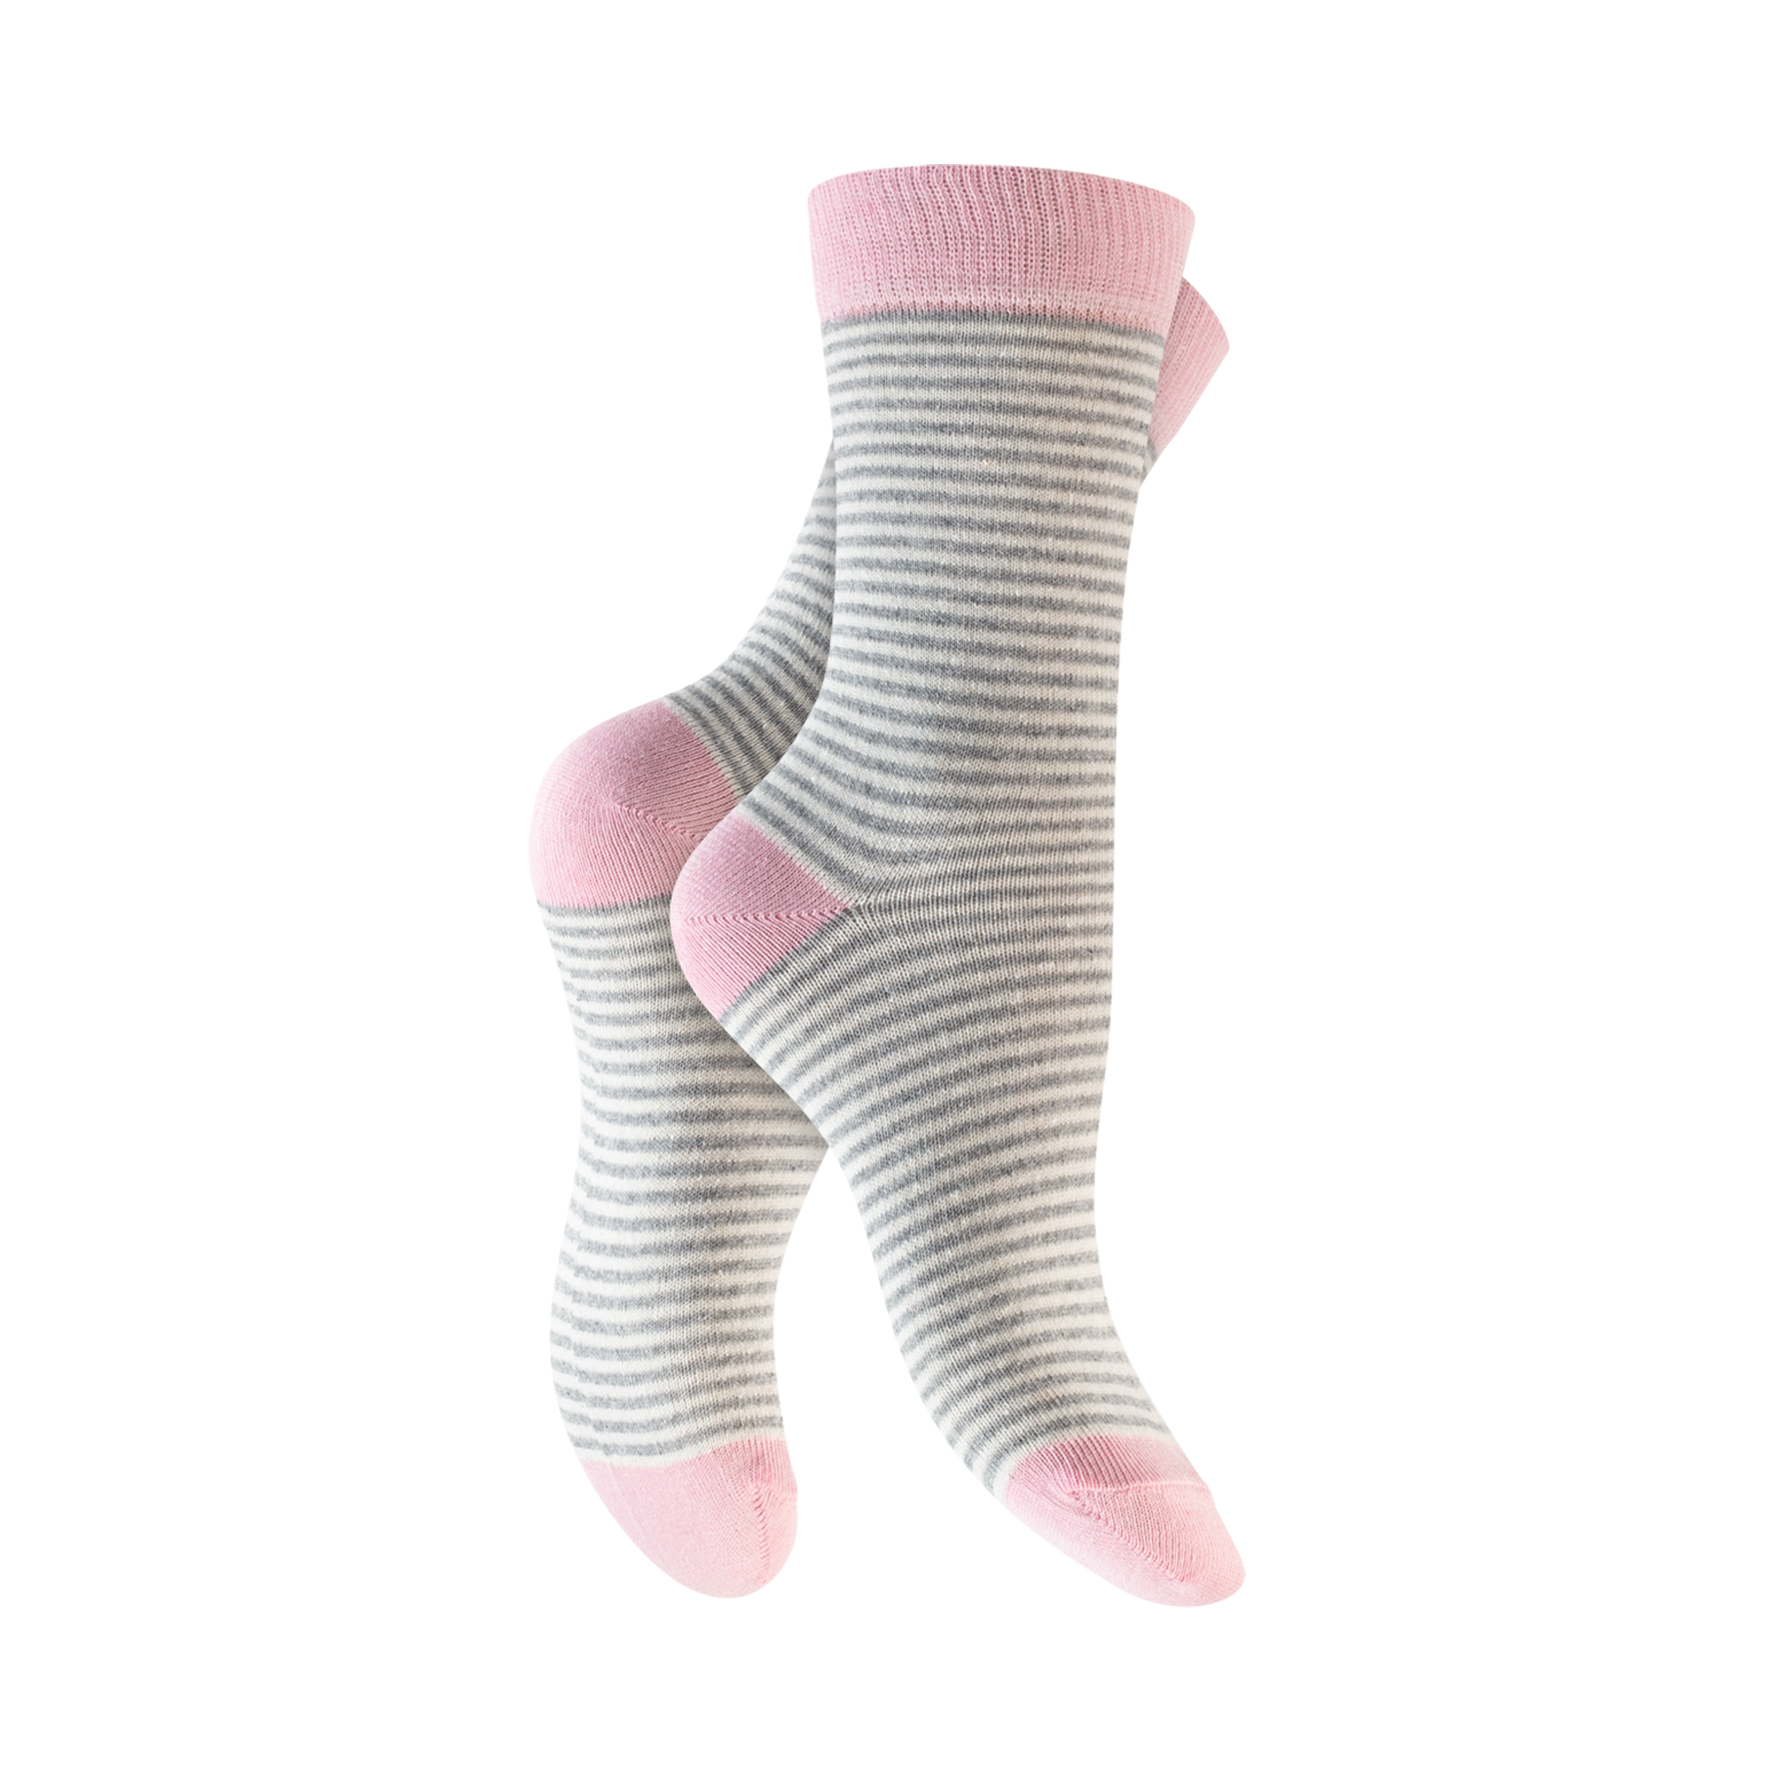 Damen Socken 5er-Pack BW/EL versch. Designs (65256